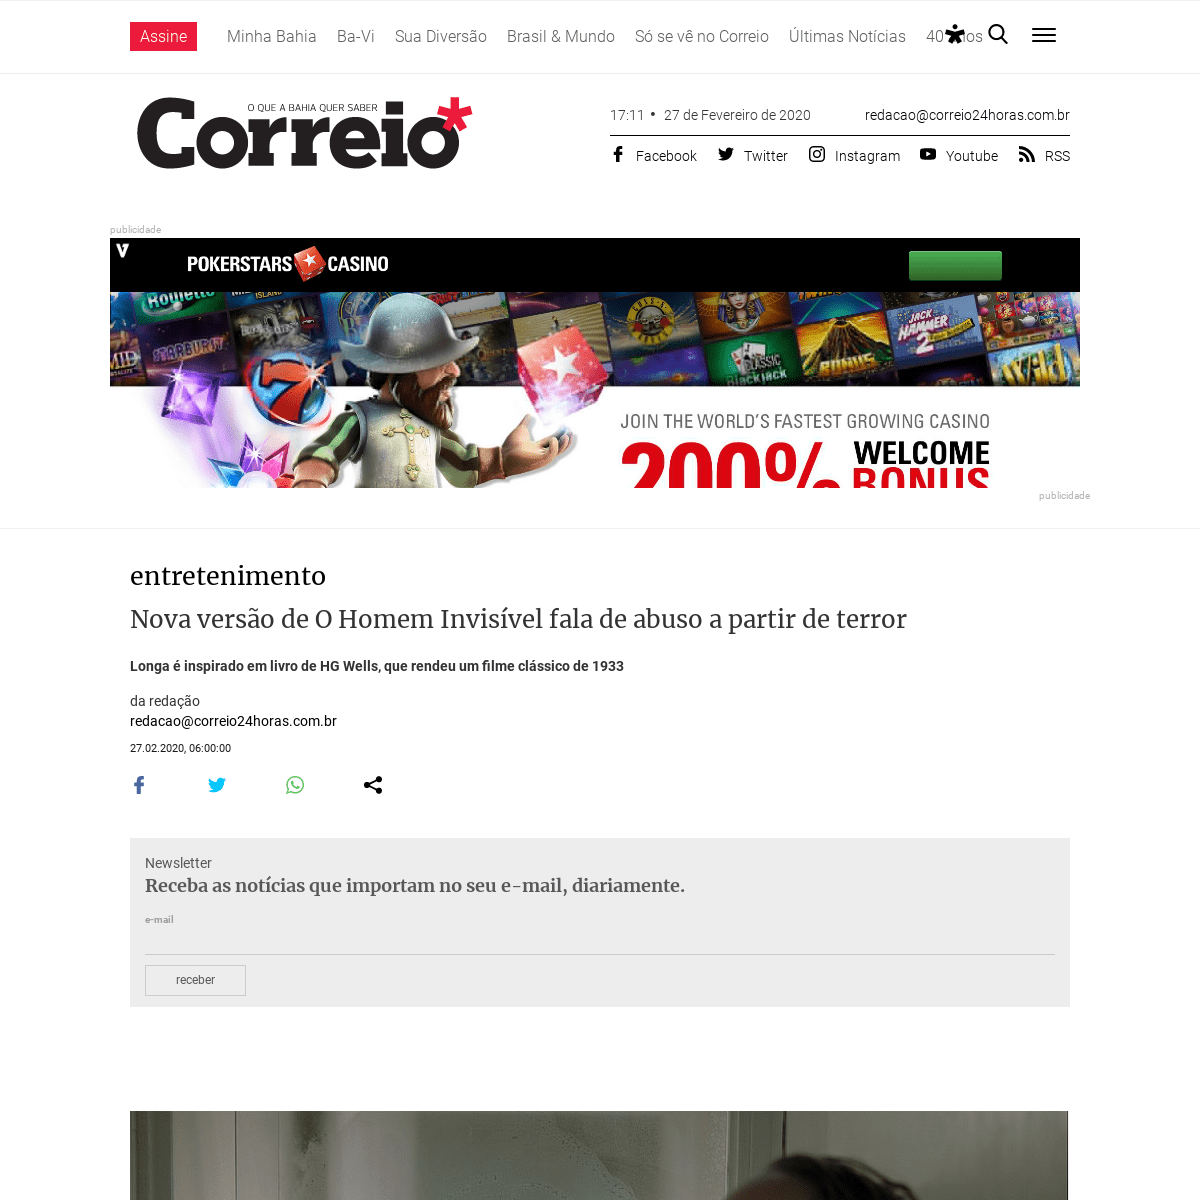 A complete backup of www.correio24horas.com.br/noticia/nid/nova-versao-de-o-homem-invisivel-fala-de-abuso-a-partir-de-terror/